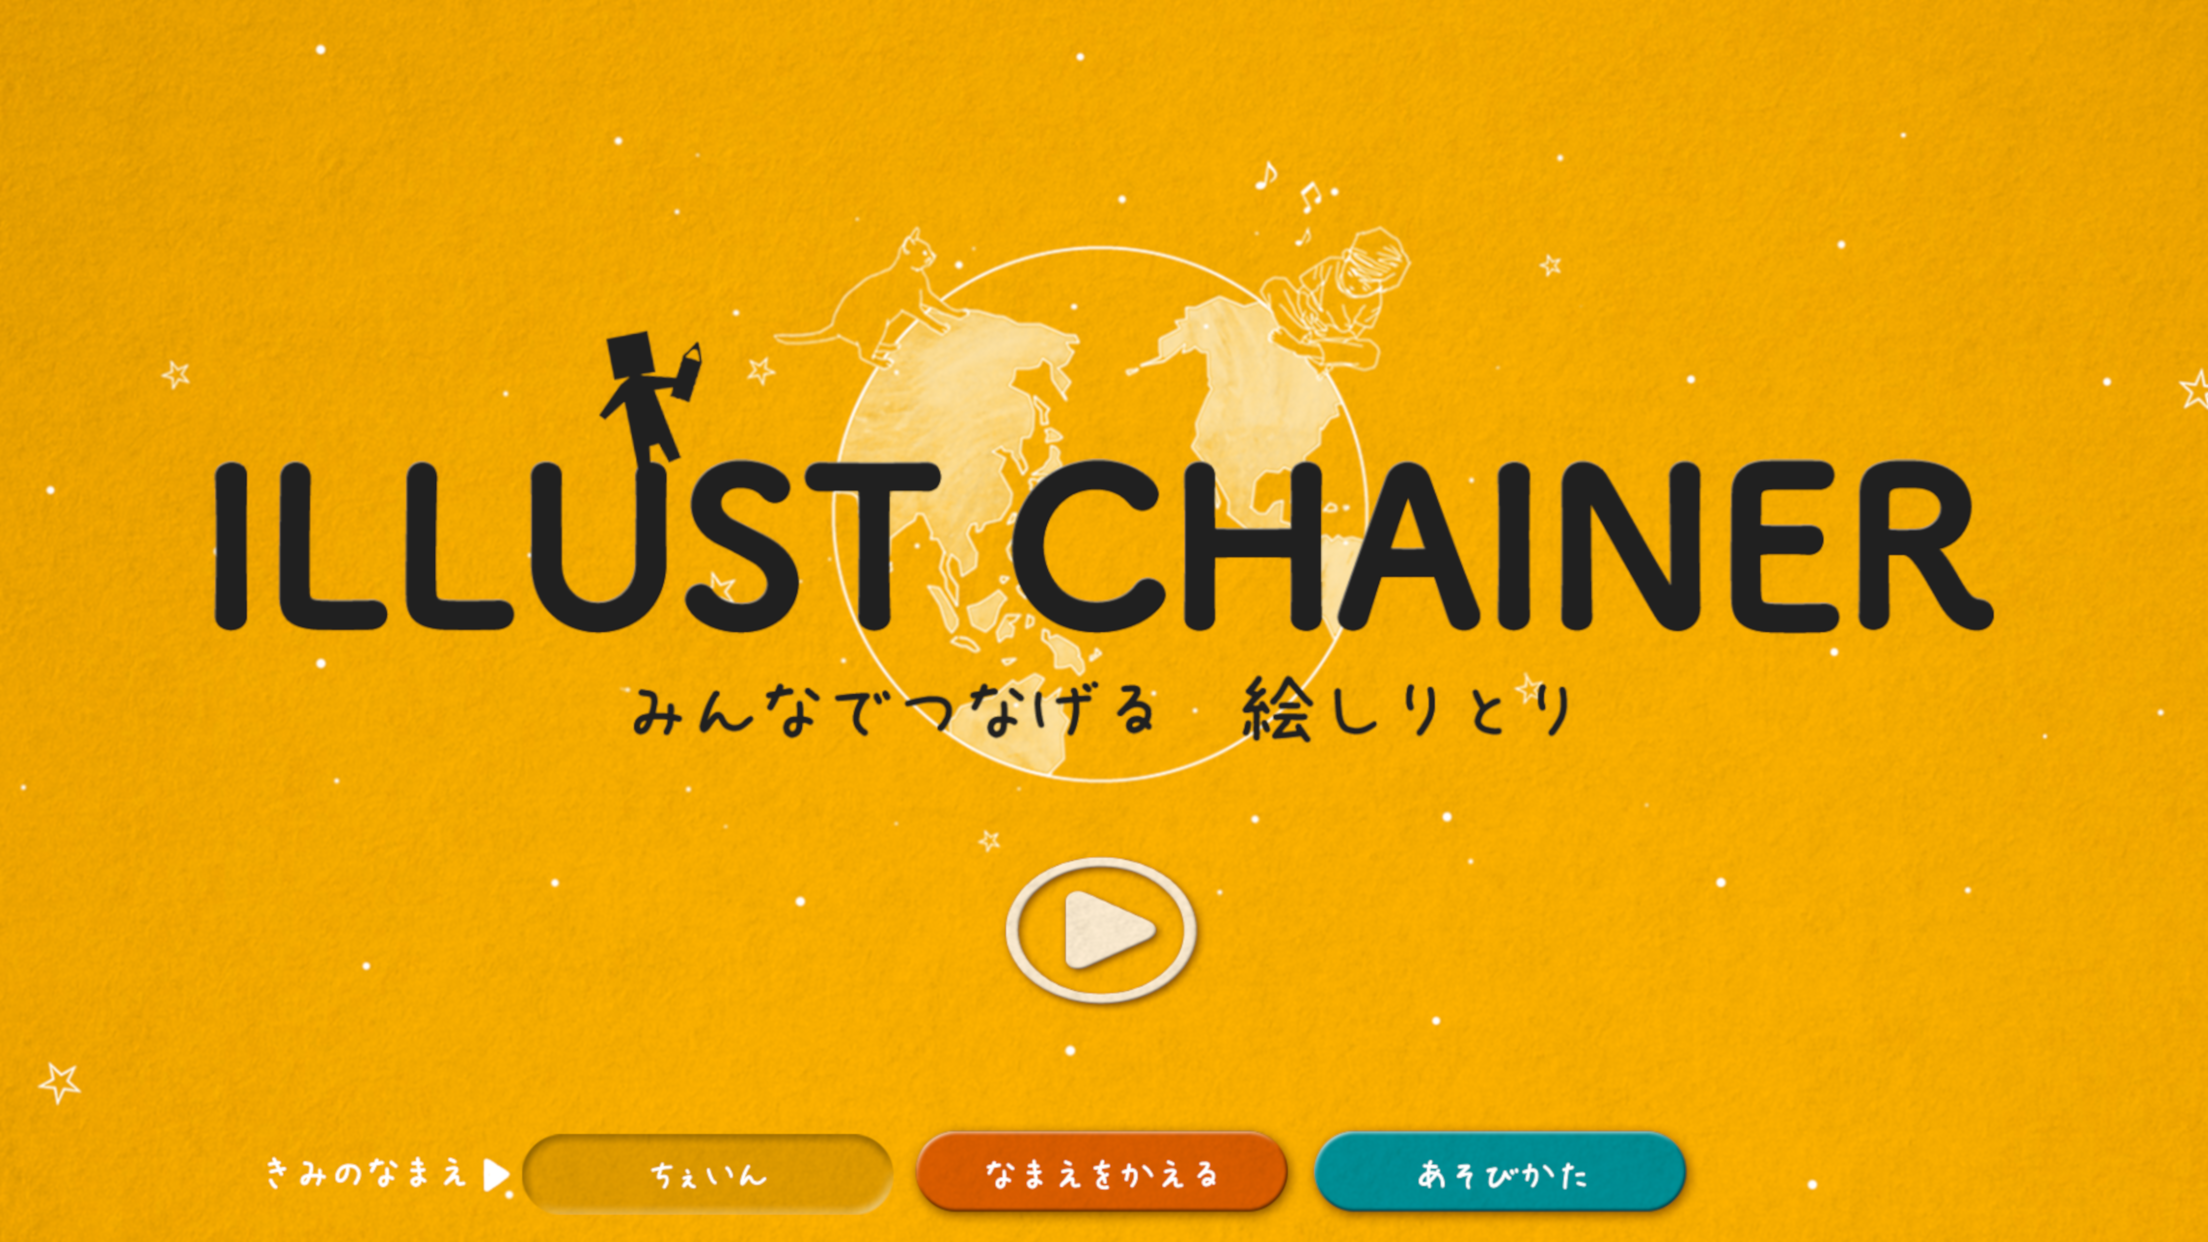 Screenshot 1 of Illust Chainer - Game Gambar Online Gambar Shiritori 1.3.5